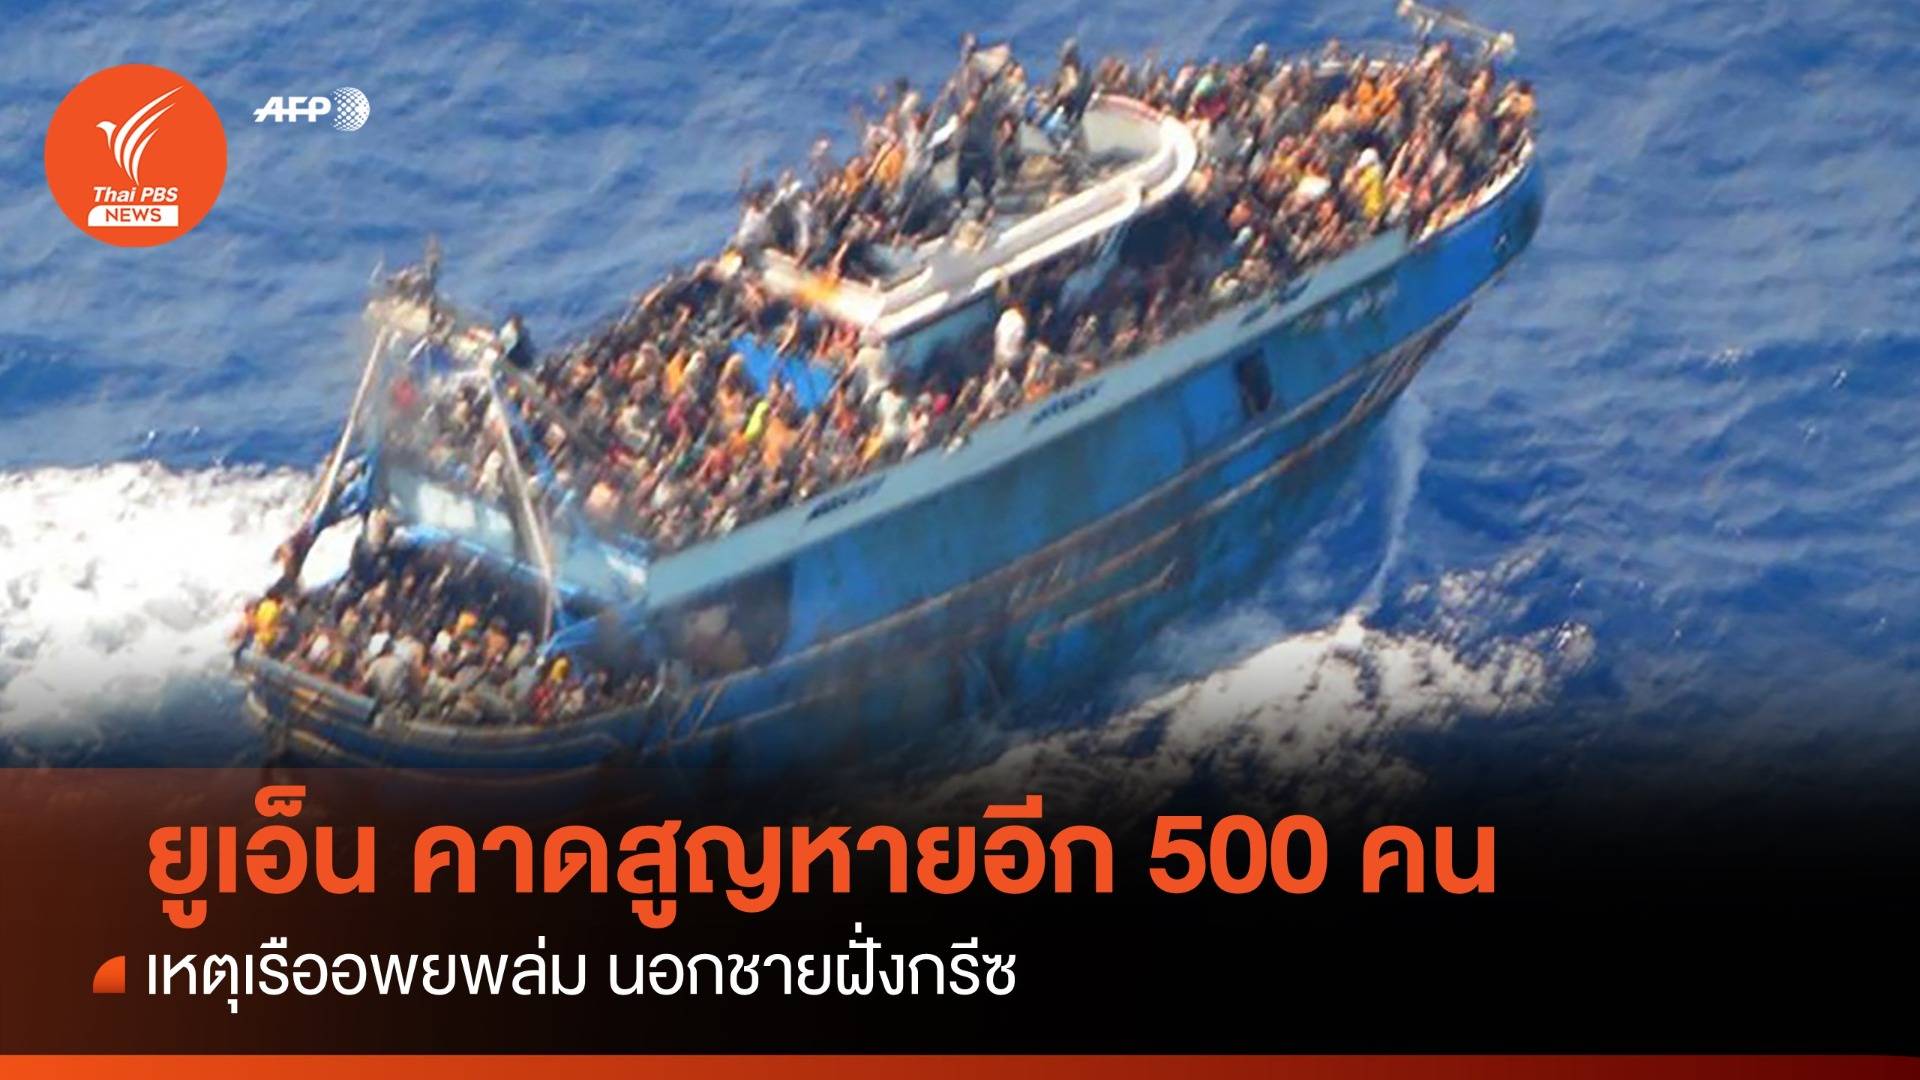 ยูเอ็นคาดสูญหายอีกกว่า 500 คน เหตุเรือผู้อพยพล่มนอกชายฝั่งกรีซ 